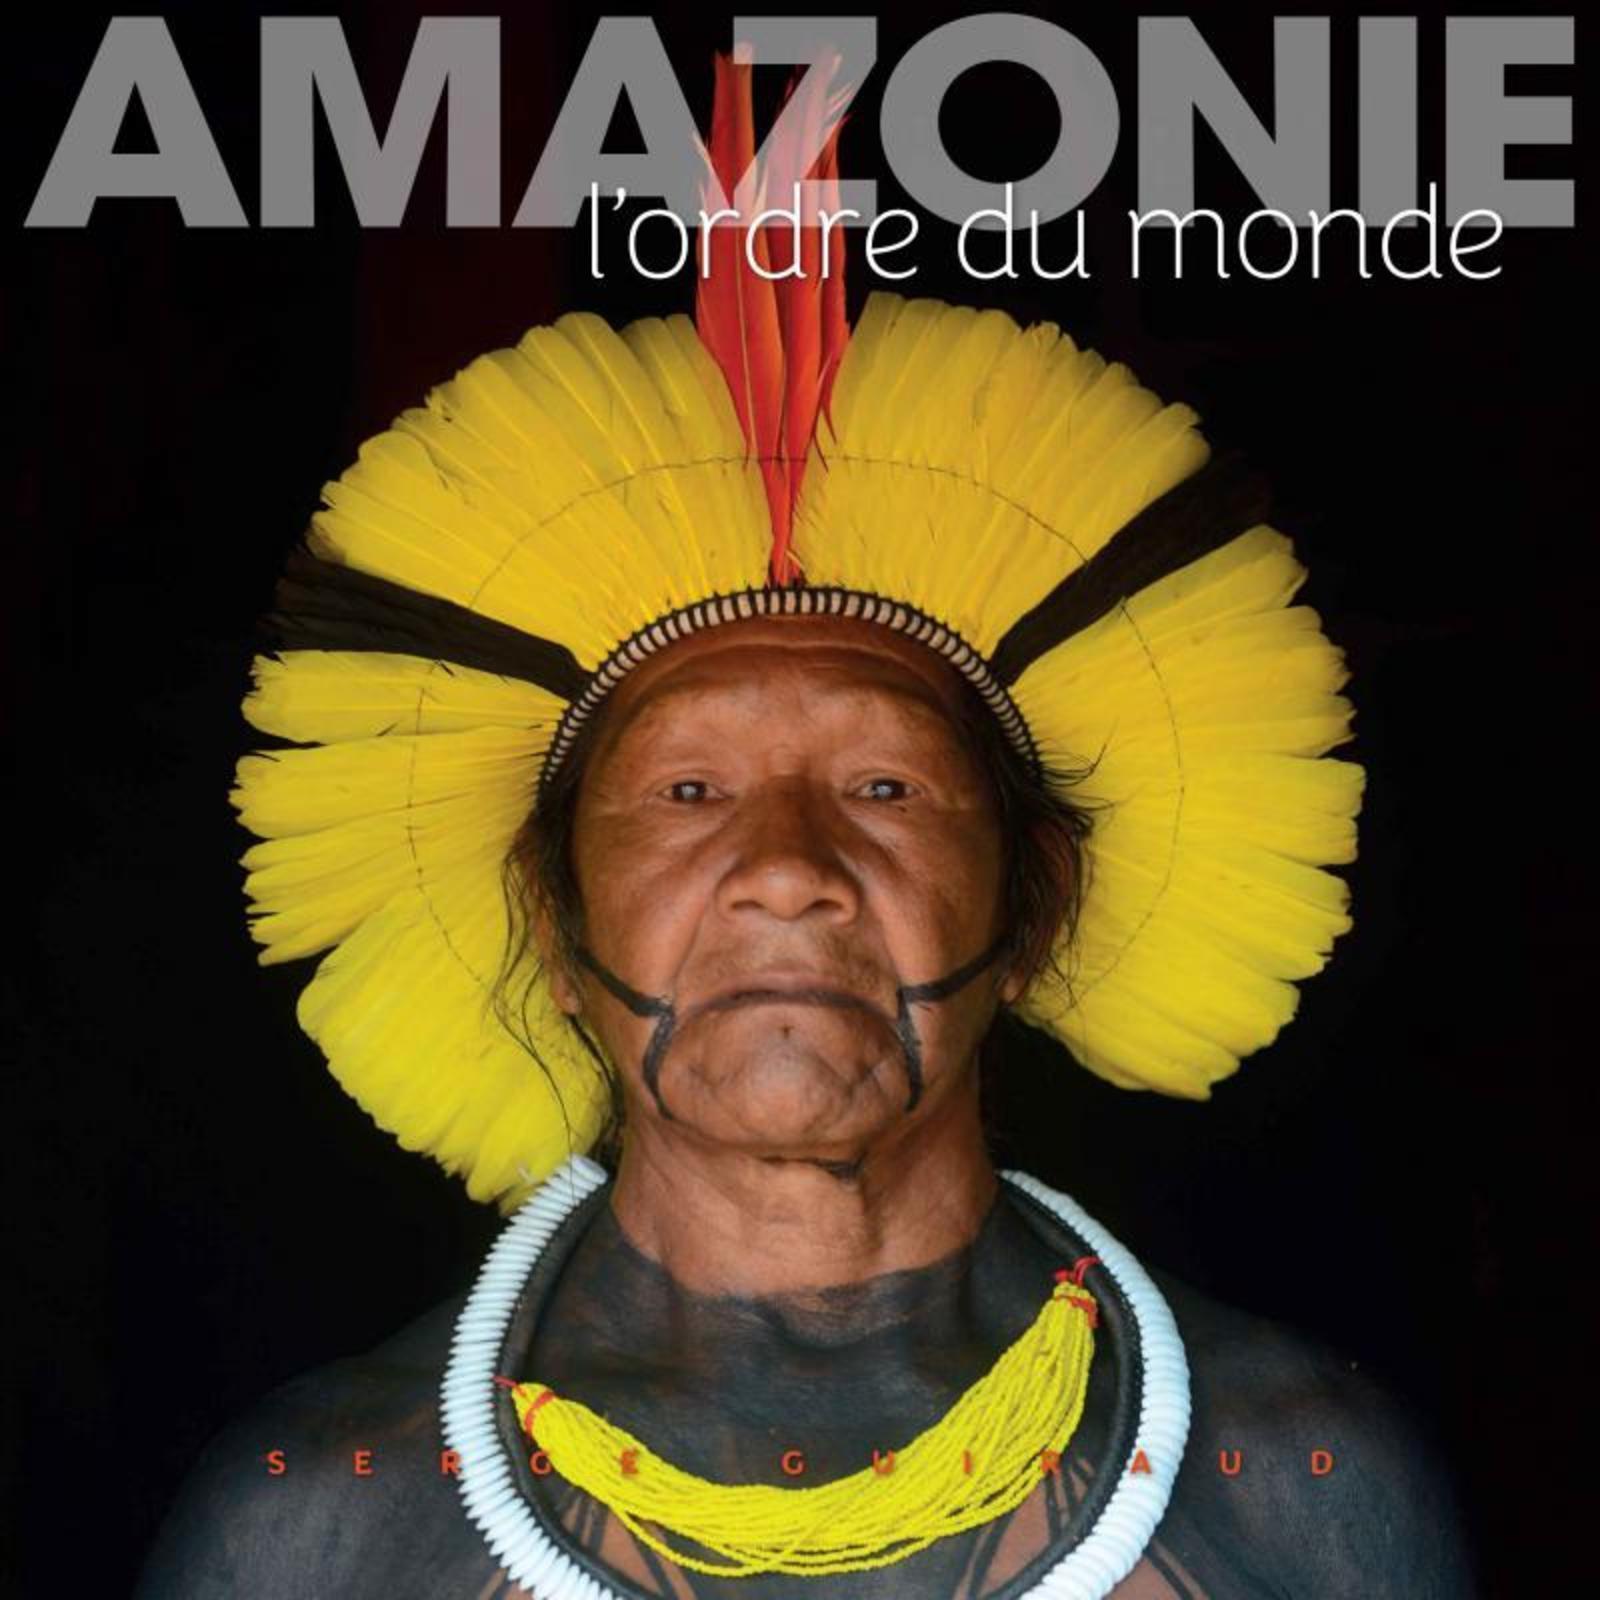 Kniha Amazonie Guiraud